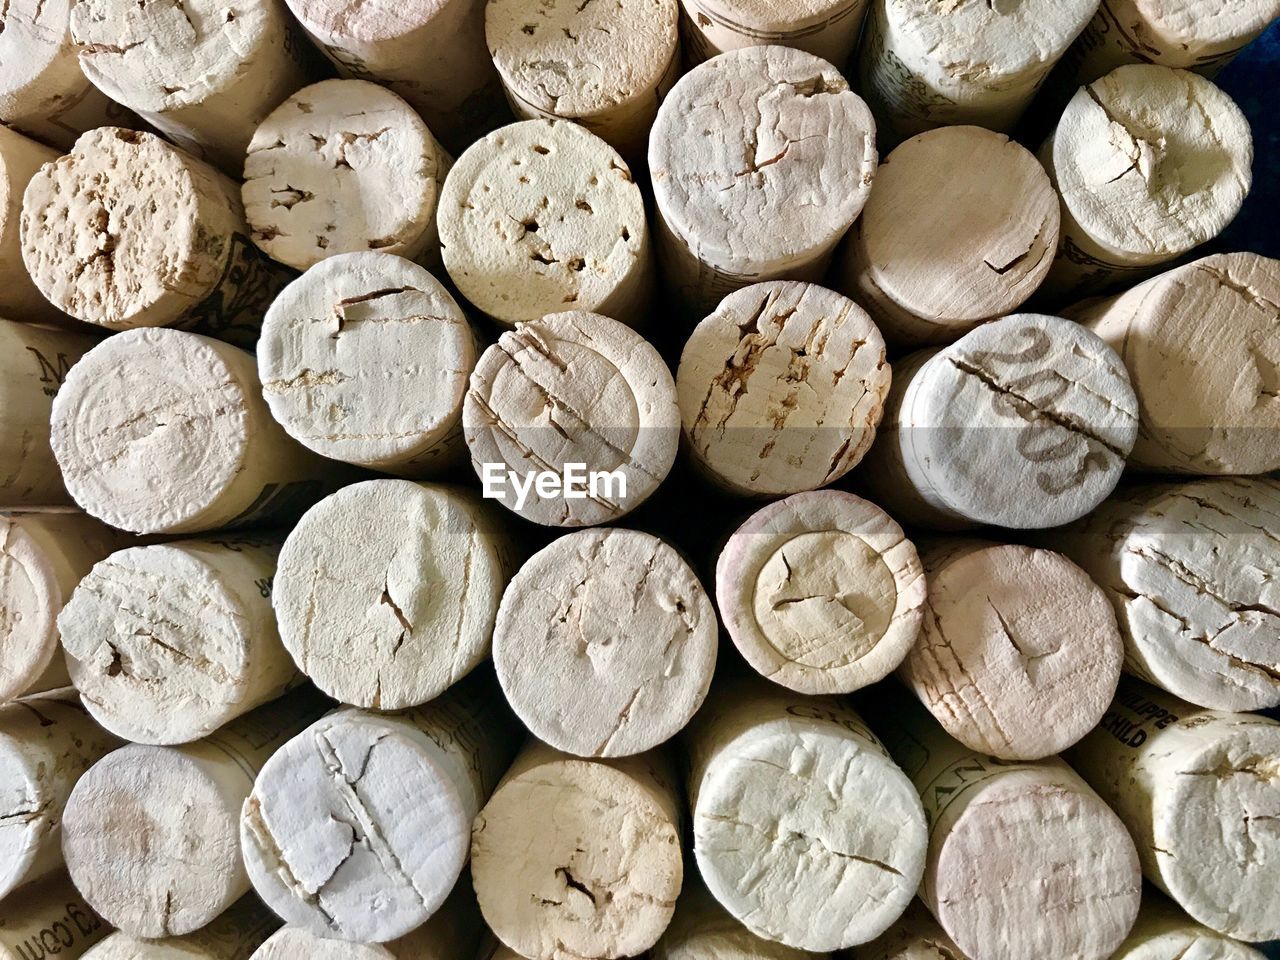 Full frame shot of wine corks